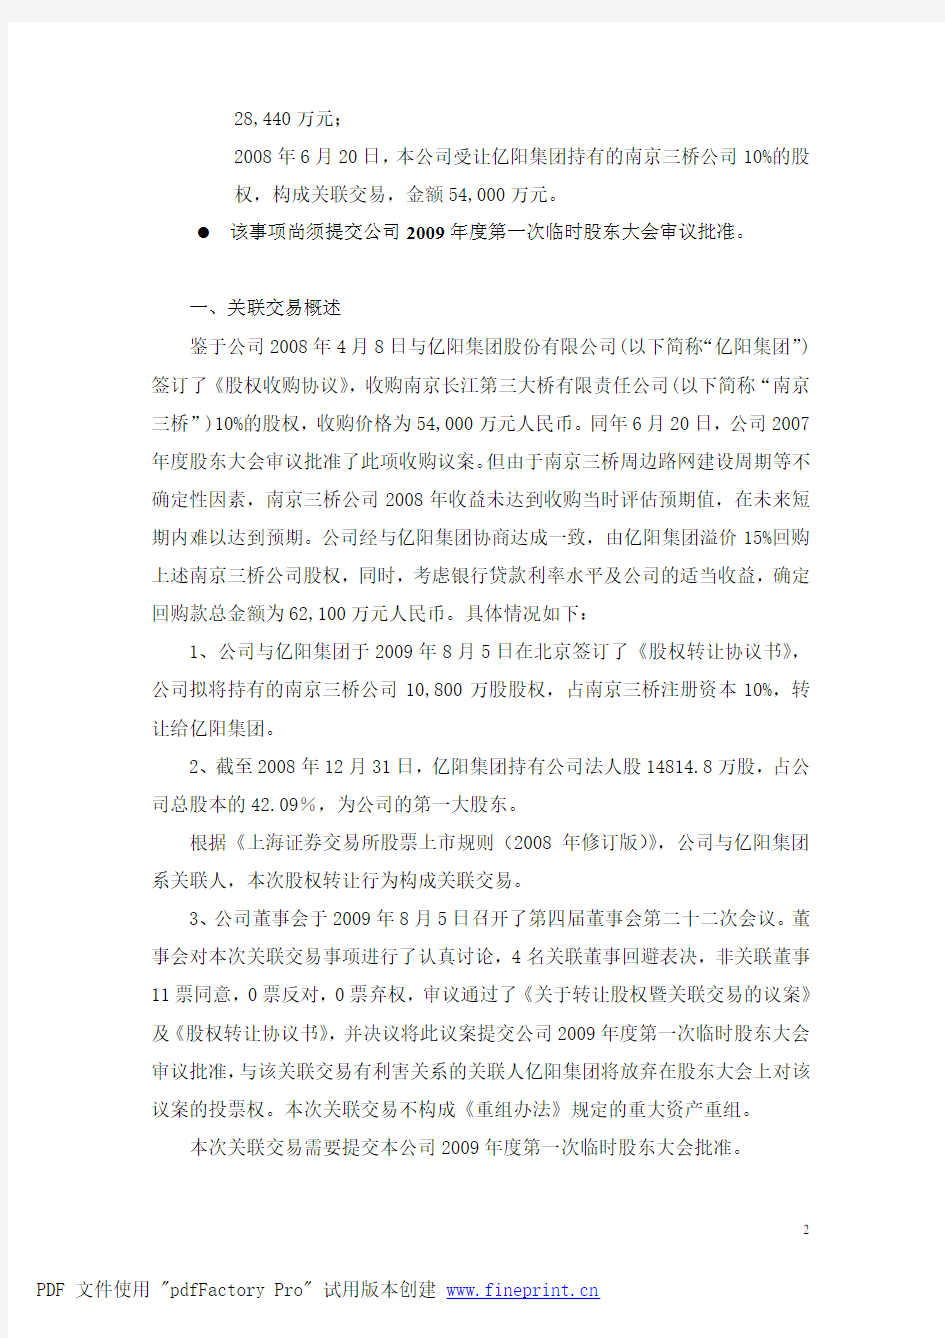 阳信通股份有限公司关于股权转让暨关联交易的公告